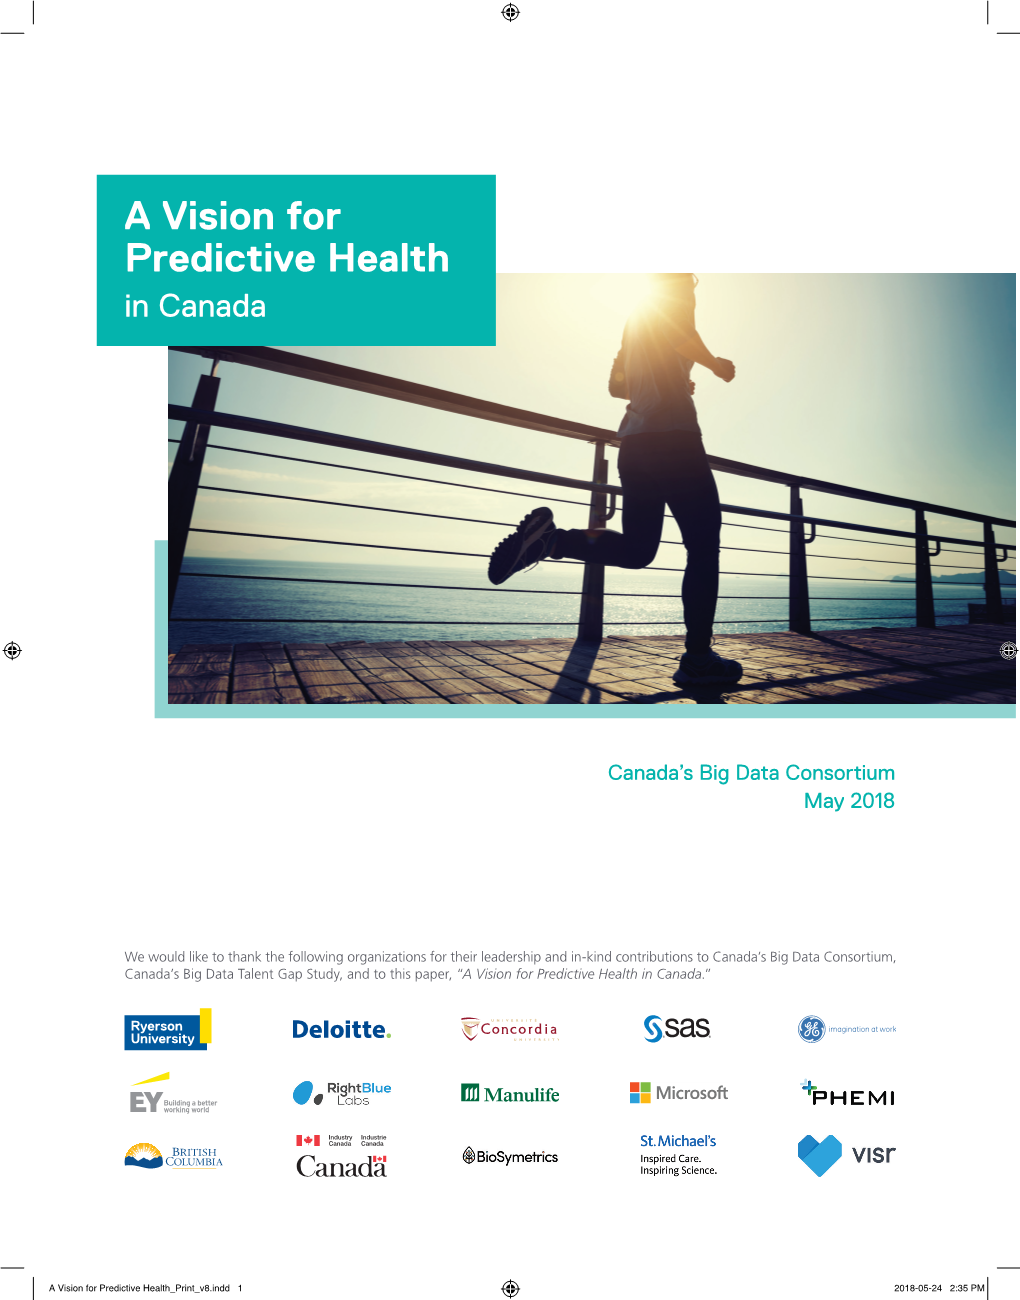 A Vision for Predictive Health in Canada